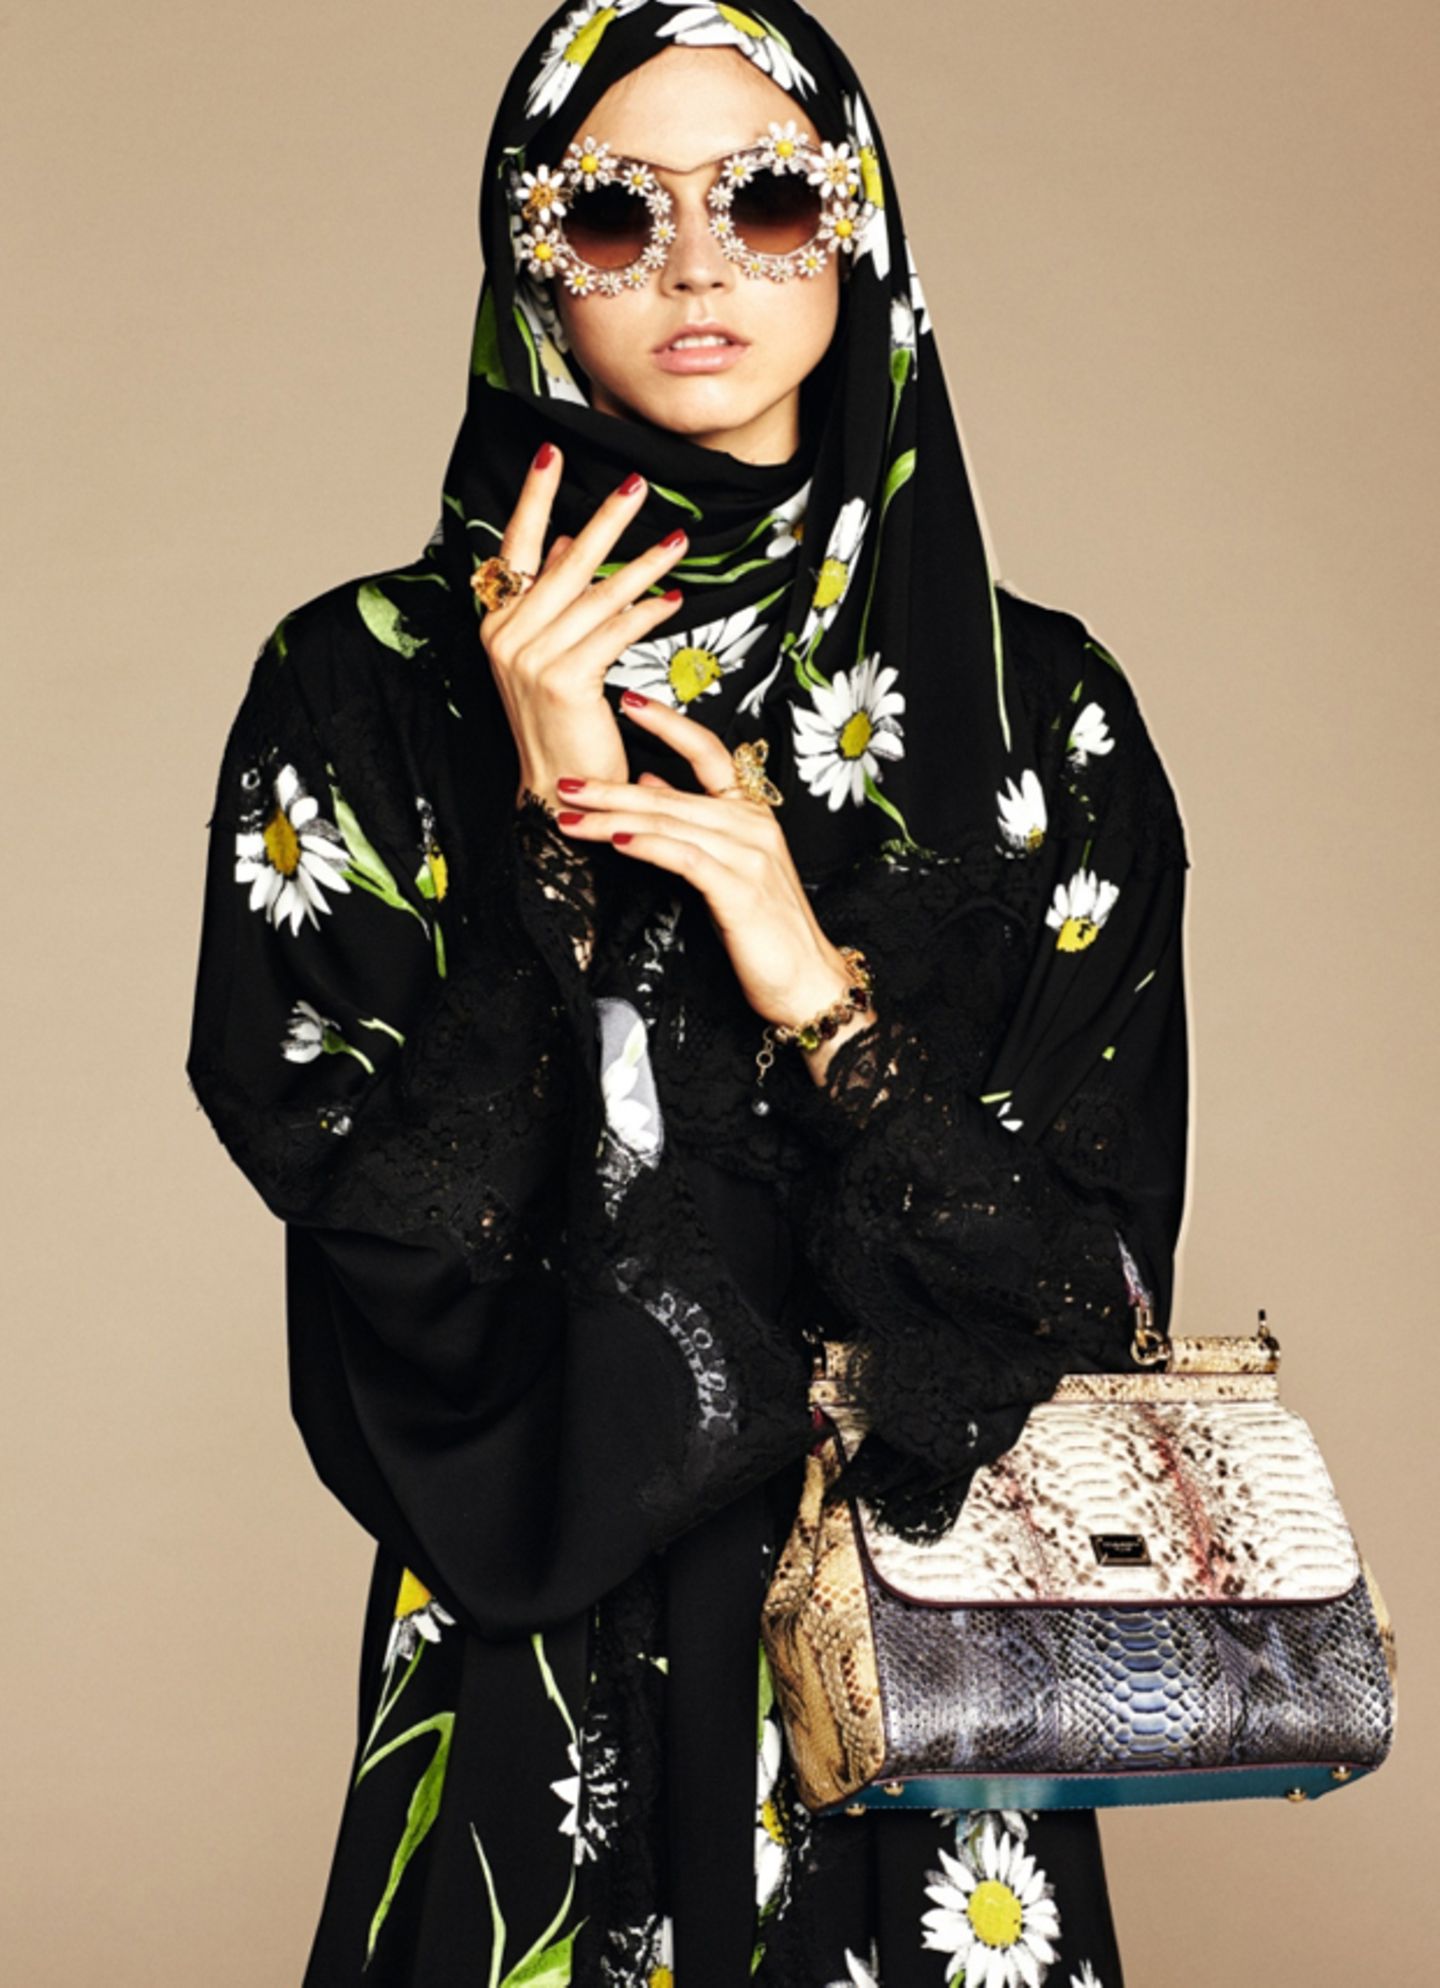 Dolce & Gabbana entwirft eine Kollektion für muslimische Frauen